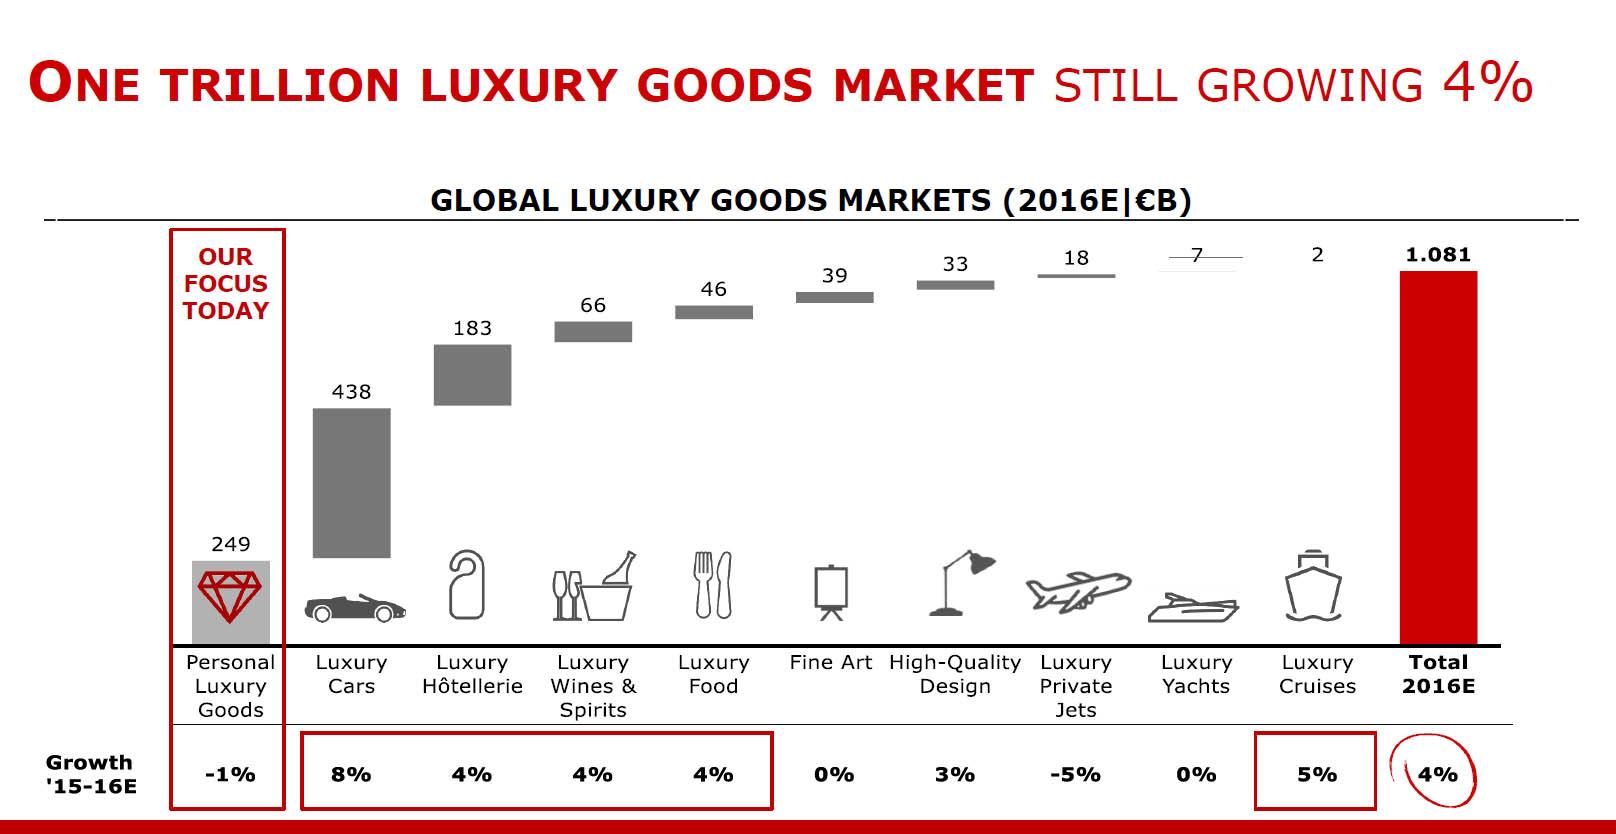 Global luxury goods market exceeds €1tn, Luxury goods sector